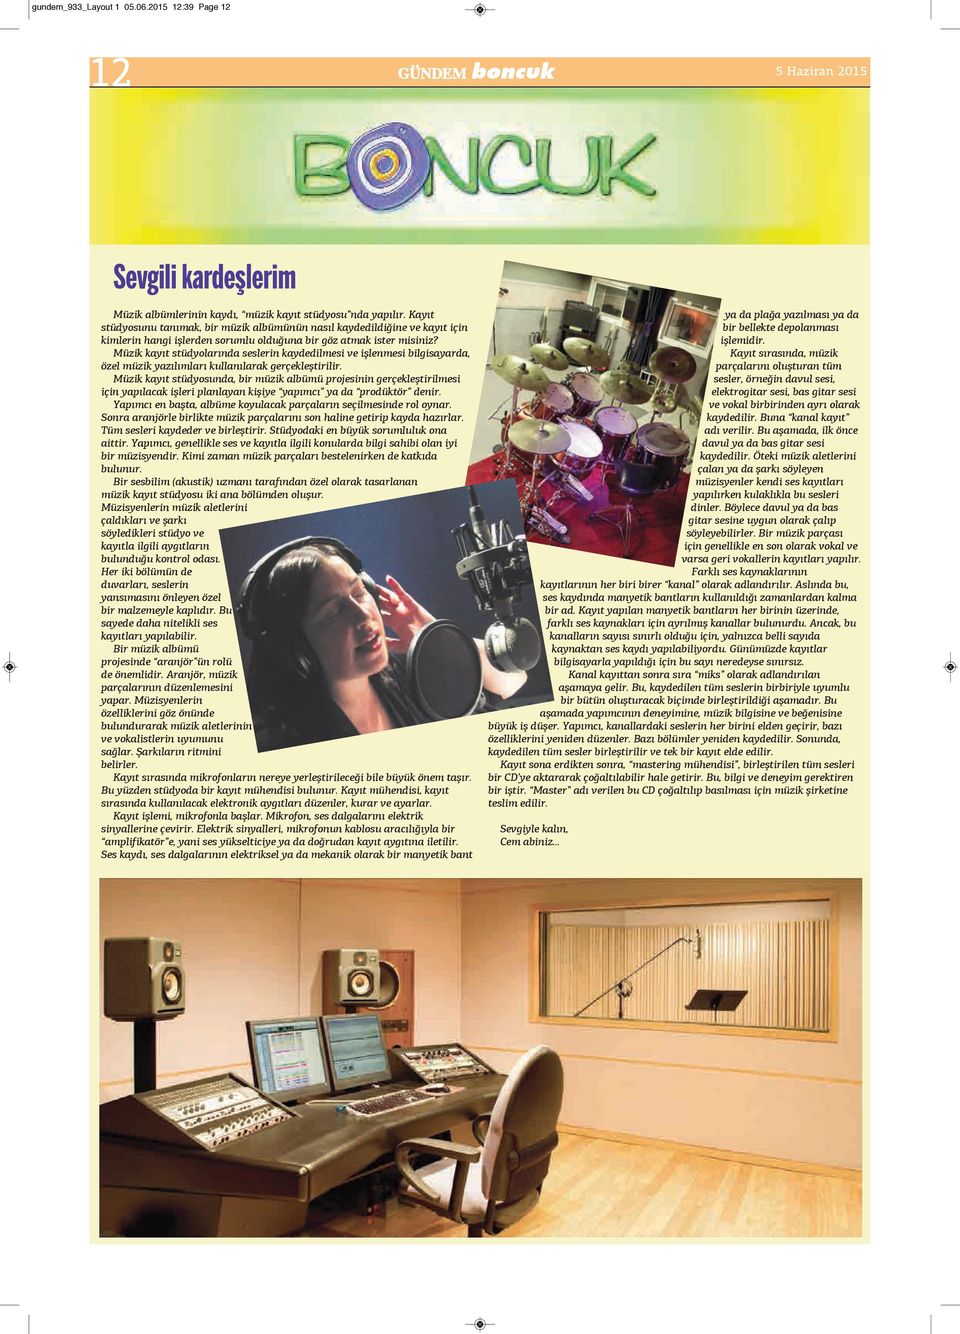 Müzik kayıt stüdyolarında seslerin kaydedilmesi ve işlenmesi bilgisayarda, özel müzik yazılımları kullanılarak gerçekleştirilir.